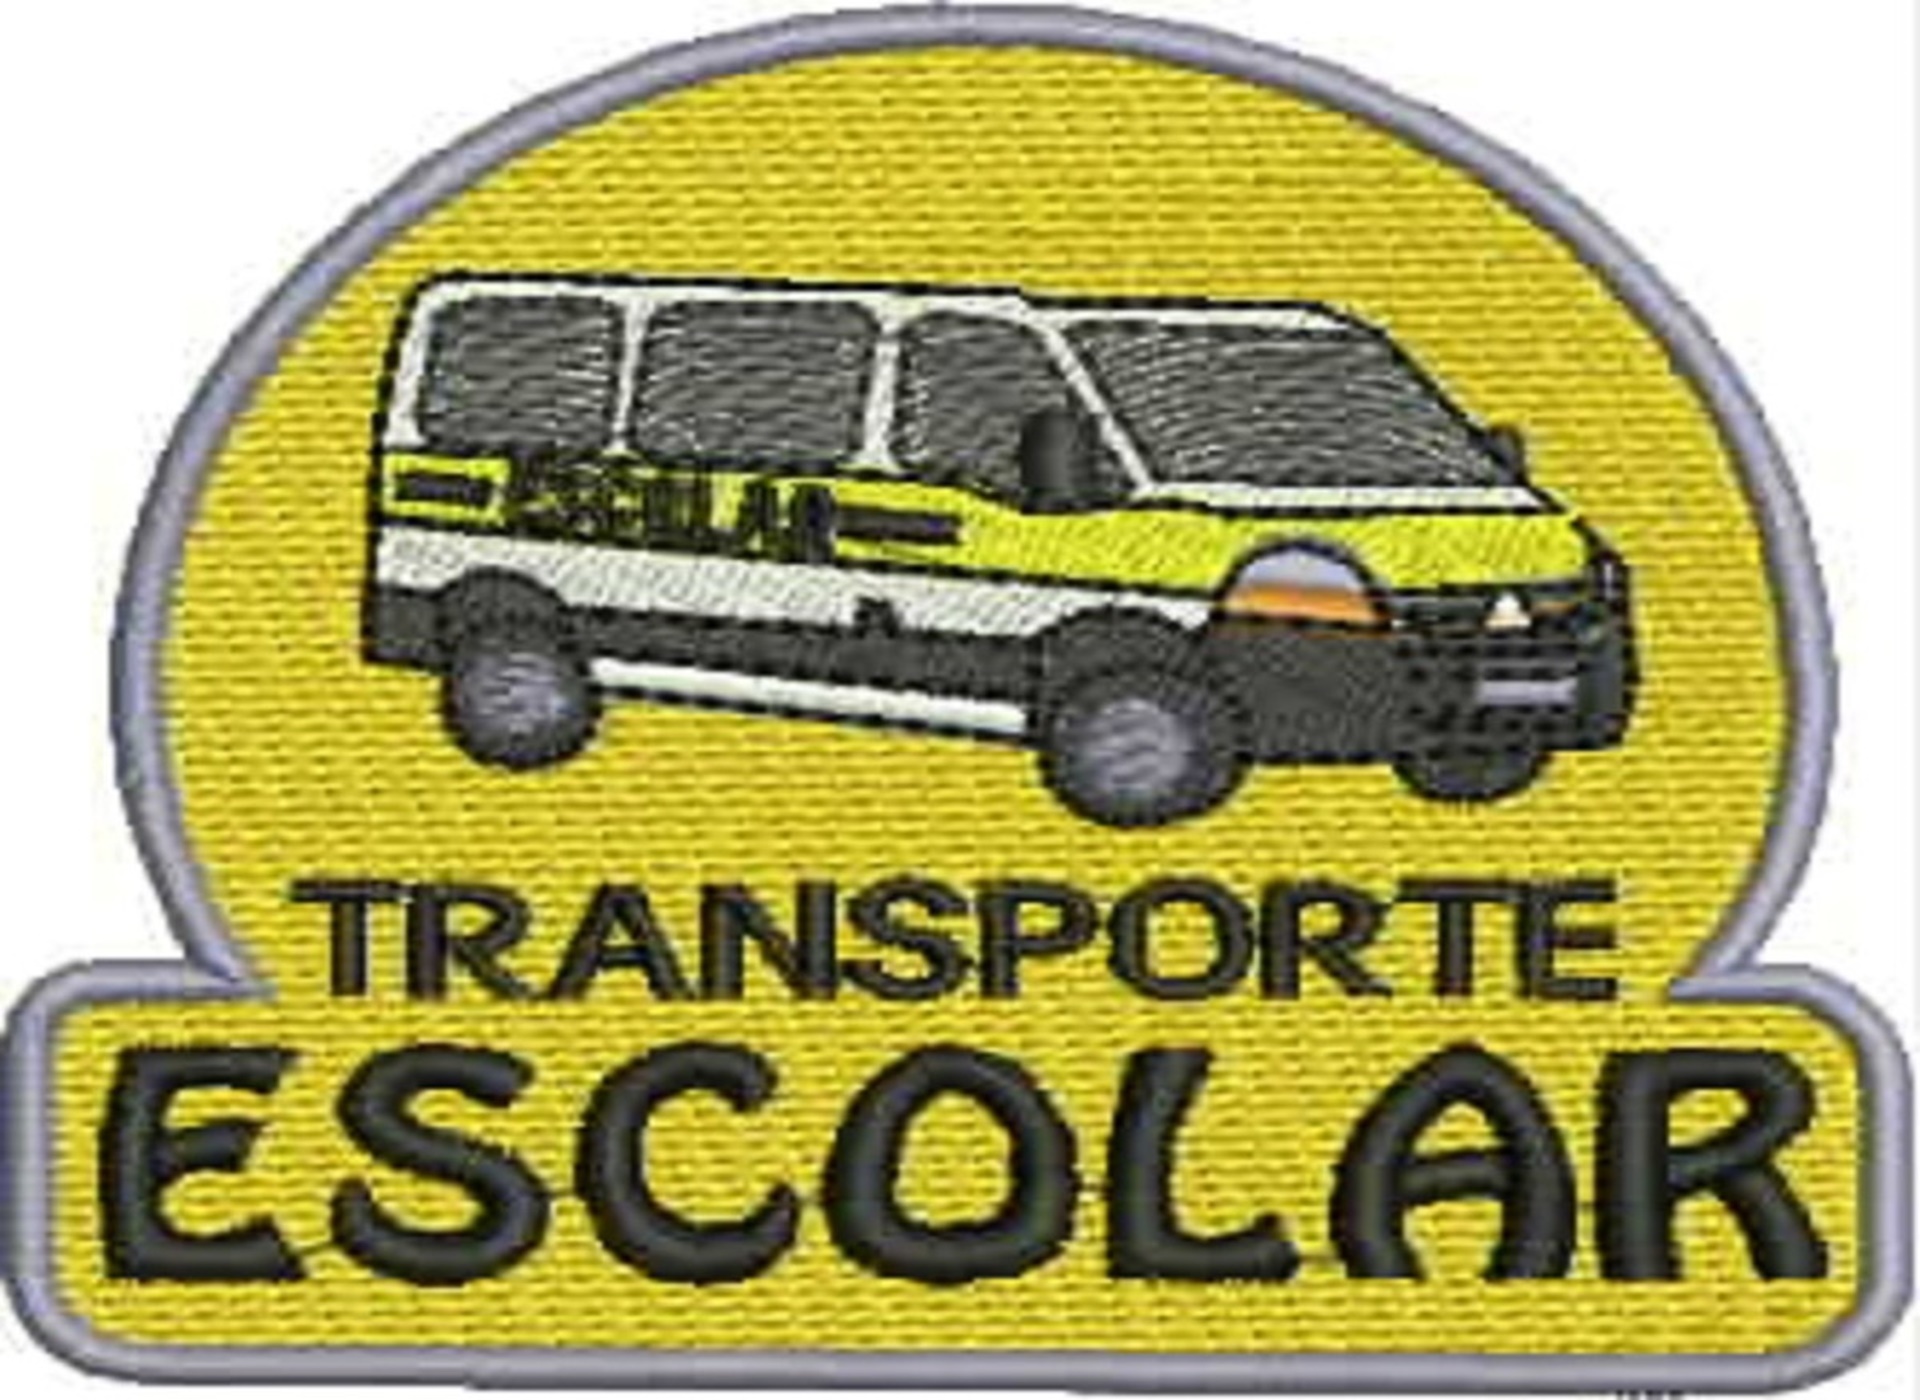 matriz-de-bordado-transporte-escolar-mte2-transporte-escolar